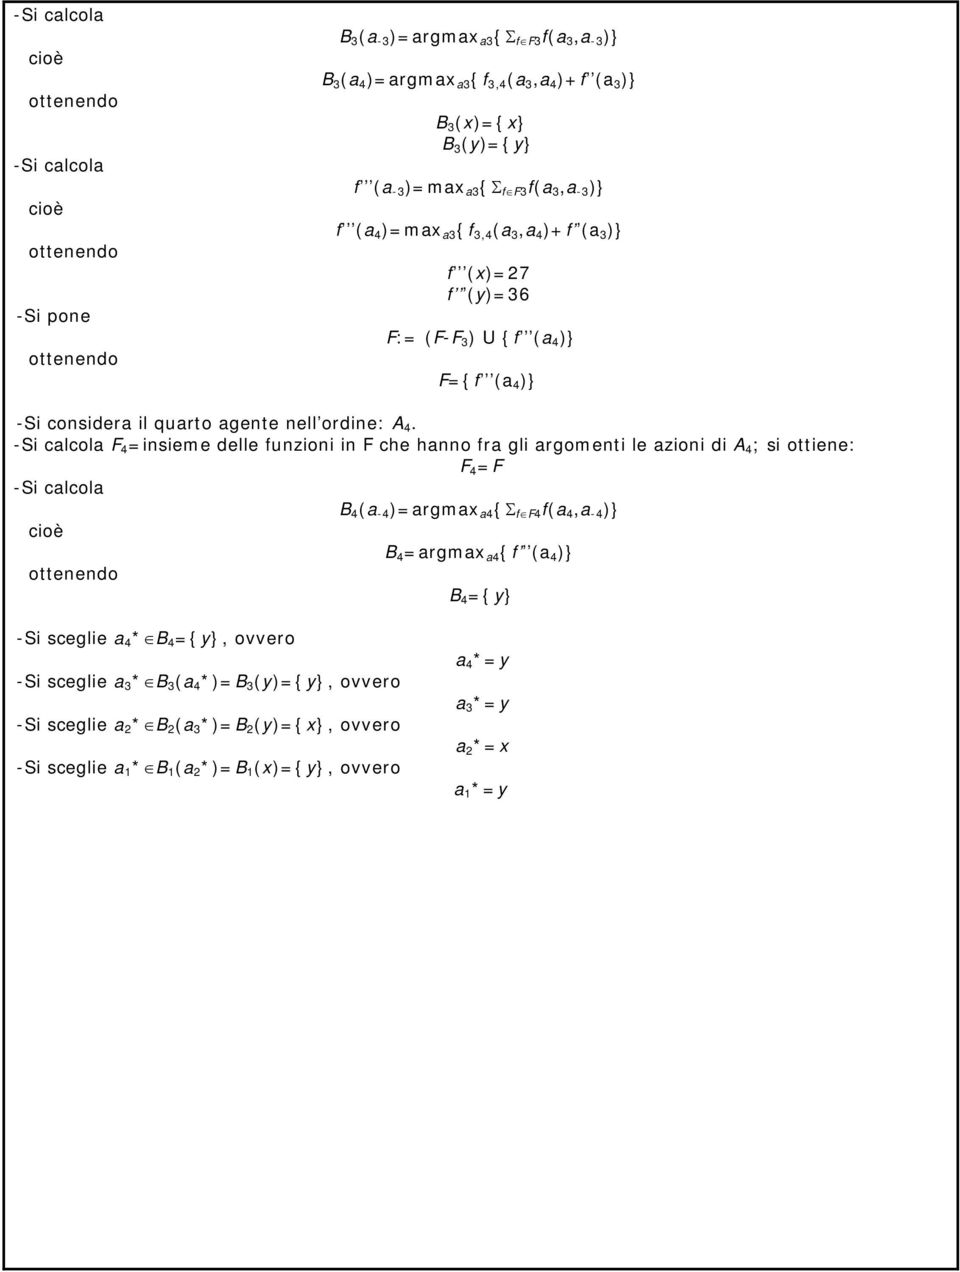 F 4 =insieme delle funzioni in F che hanno fra gli argomenti le azioni di A 4 ; si ottiene: F 4 =F B 4 (a -4 )=argmax a4 {Σ f F4 f(a 4,a -4 )} B 4 =argmax a4 {f (a 4 )} B 4 ={y}